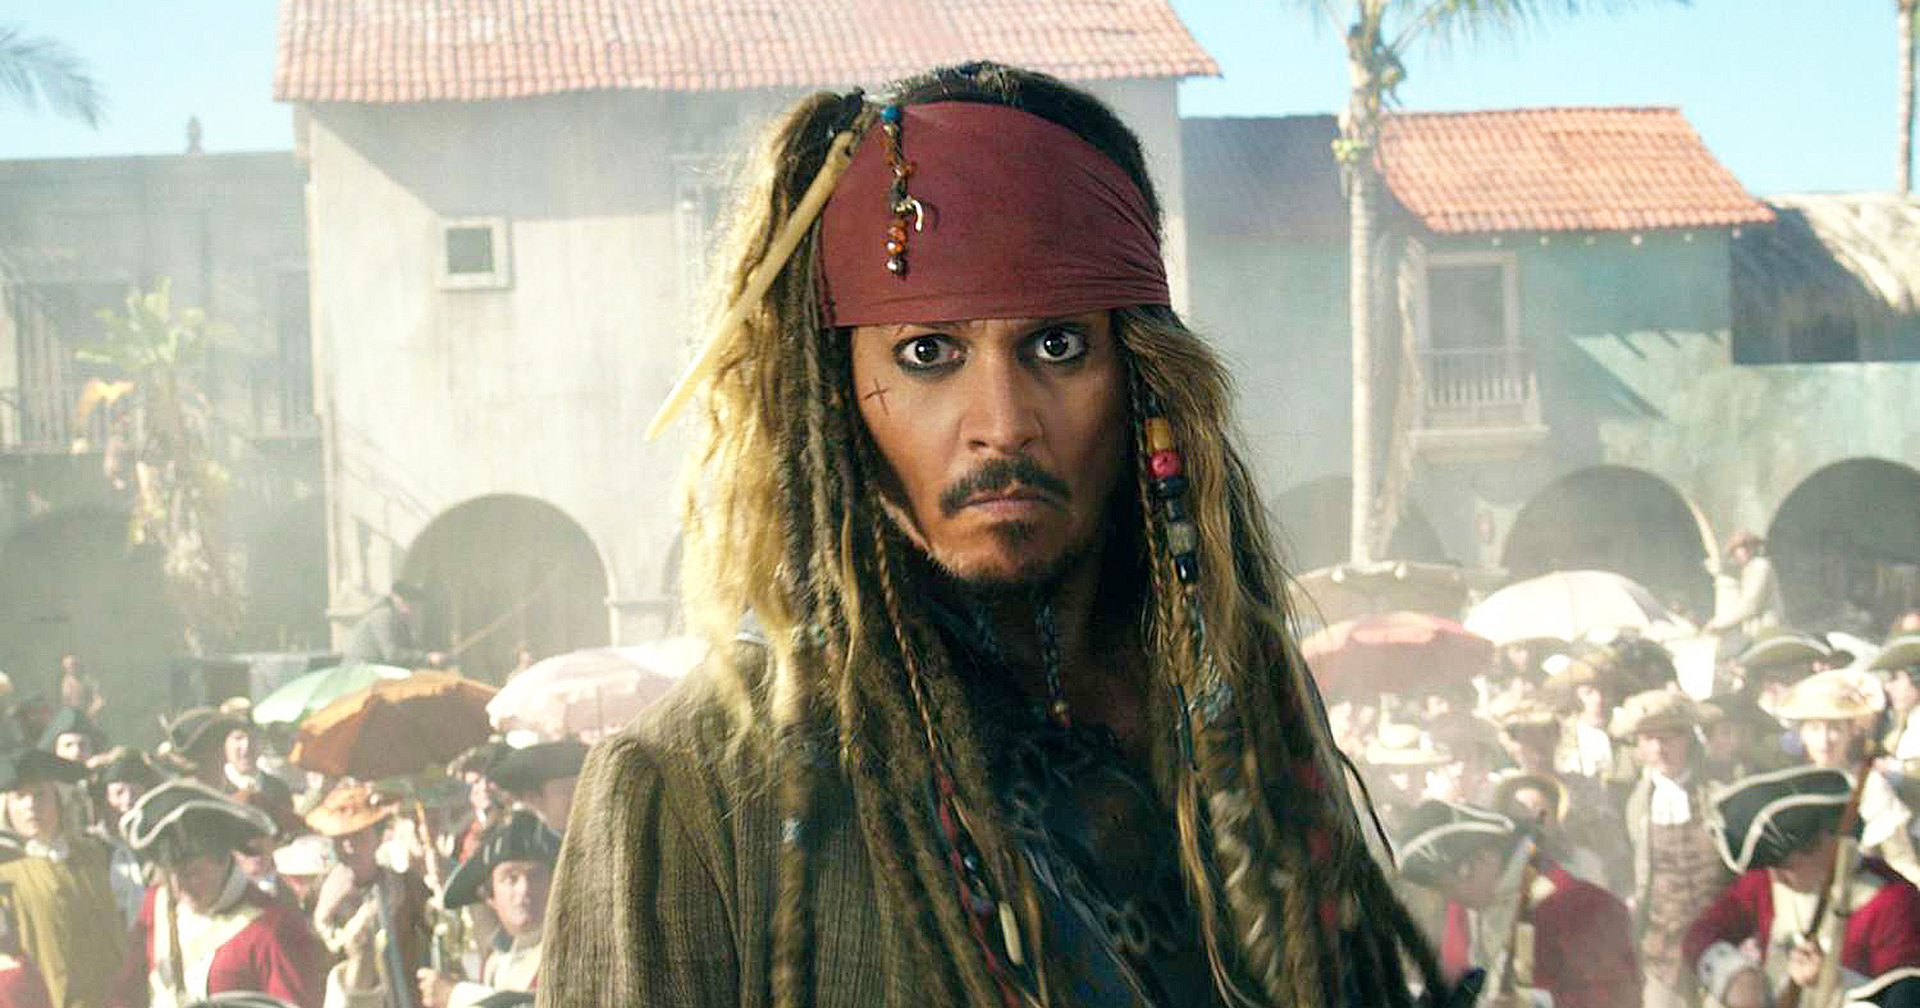 ไม่รอ Johnny Depp แล้วนะ! ผู้สร้างยืนยันรีบูต ‘Pirates of the Caribbean’ ใหม่ในภาค 6